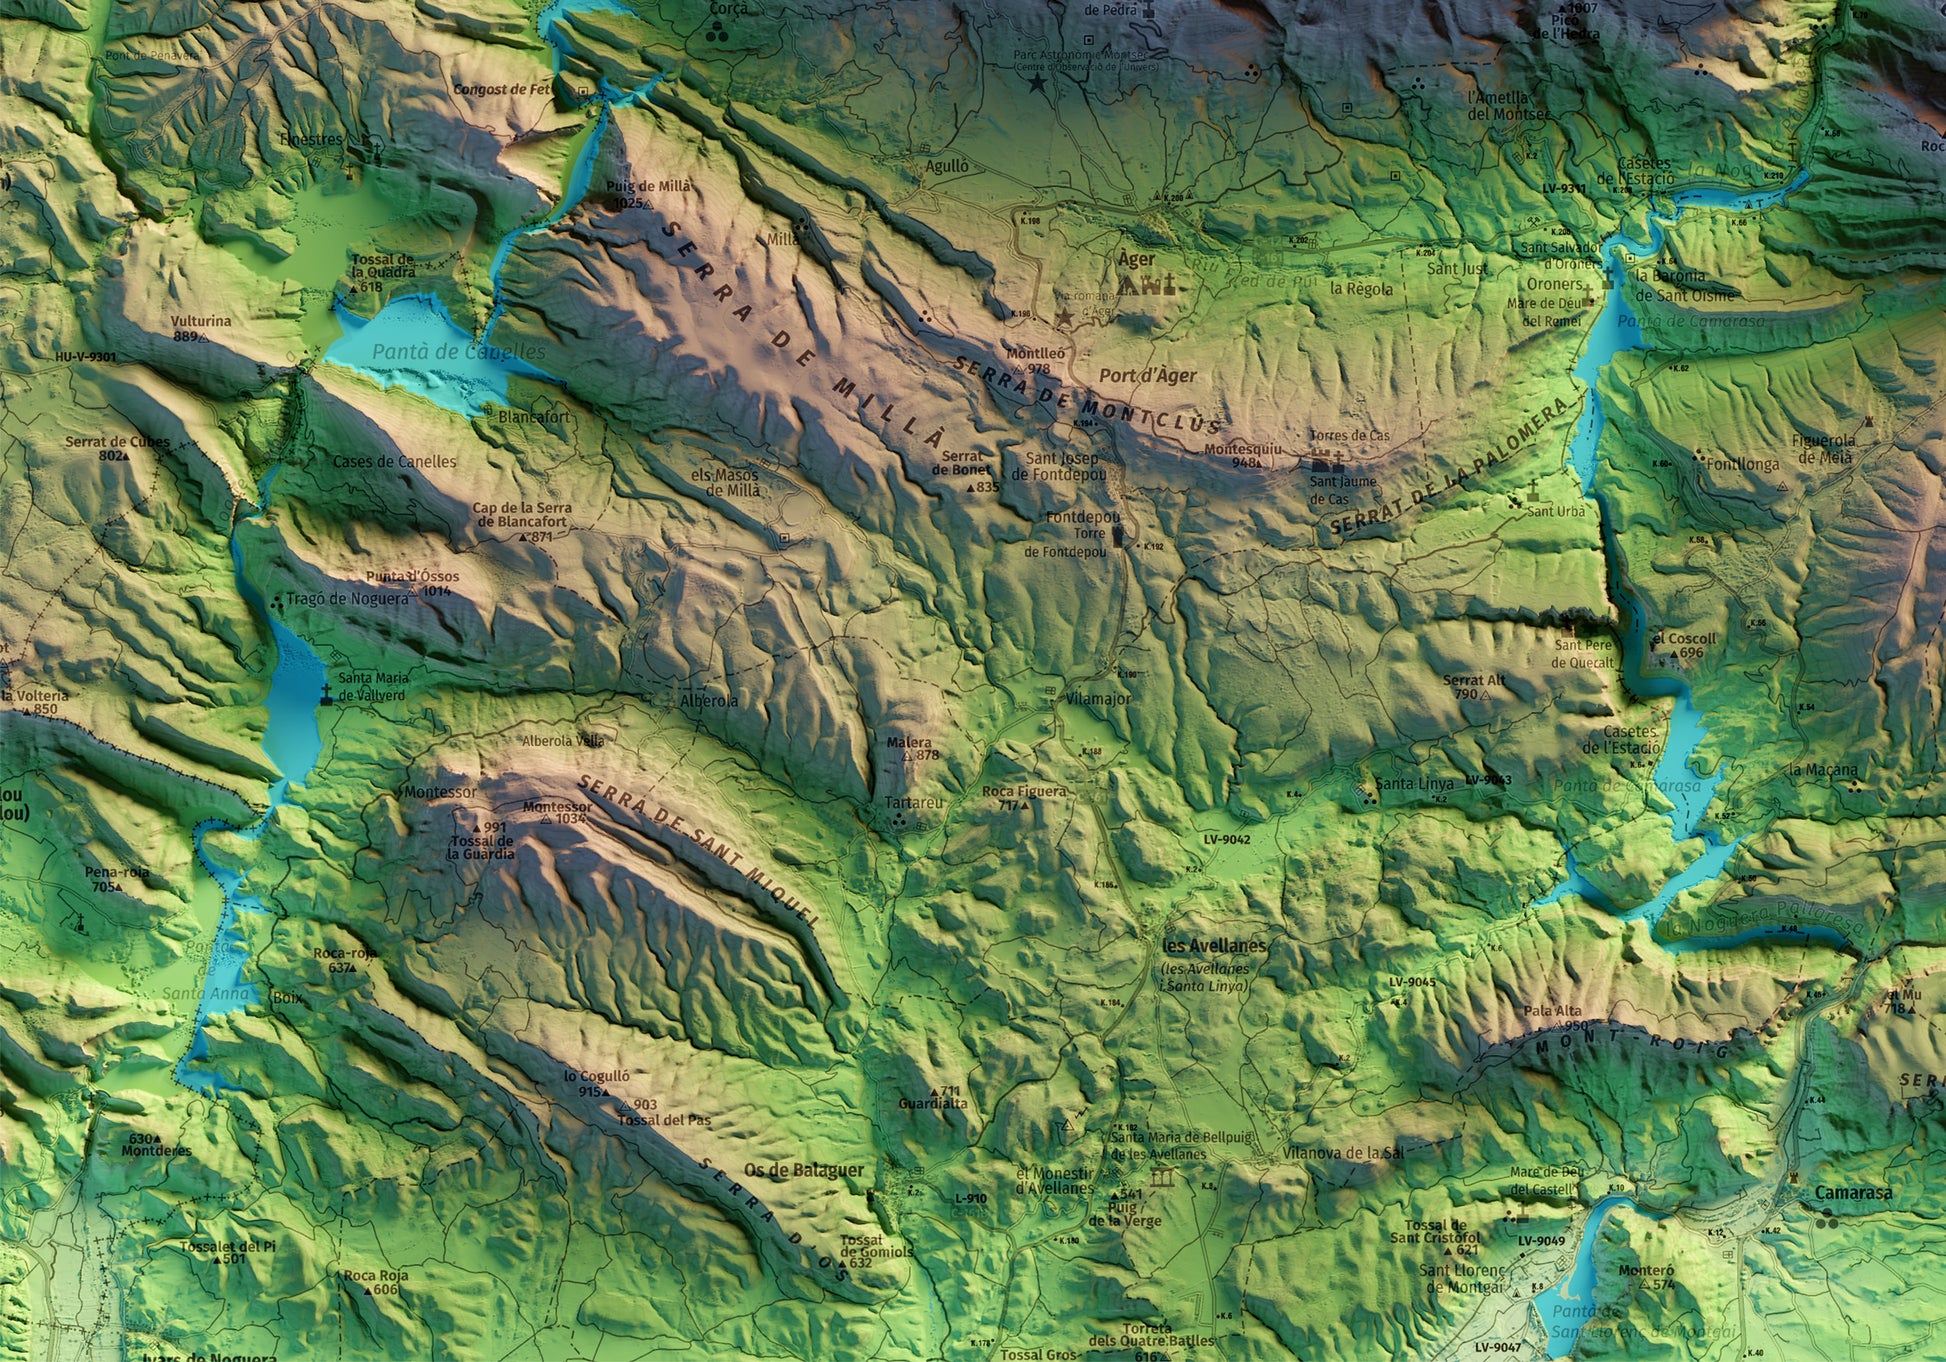 Detall del mapa imprès que inclou tota la Serra del Montsec, que inclou Montsec de l'Estall, Montsec d'Ares i Montsec de Rúbies (o de Meià). El mapa es presenta en un estil minimalista i elegant, amb un detallat modelatge d'elevacions terrestres mapa imprès que abasta tota la Serra del Montsec, que inclou Montsec de l'Estall, Montsec d'Ares i Montsec de Rúbies (o de Meià). El mapa es presenta en un estil minimalista i elegant, amb un detallat modelatge d'elevacions terrestres.